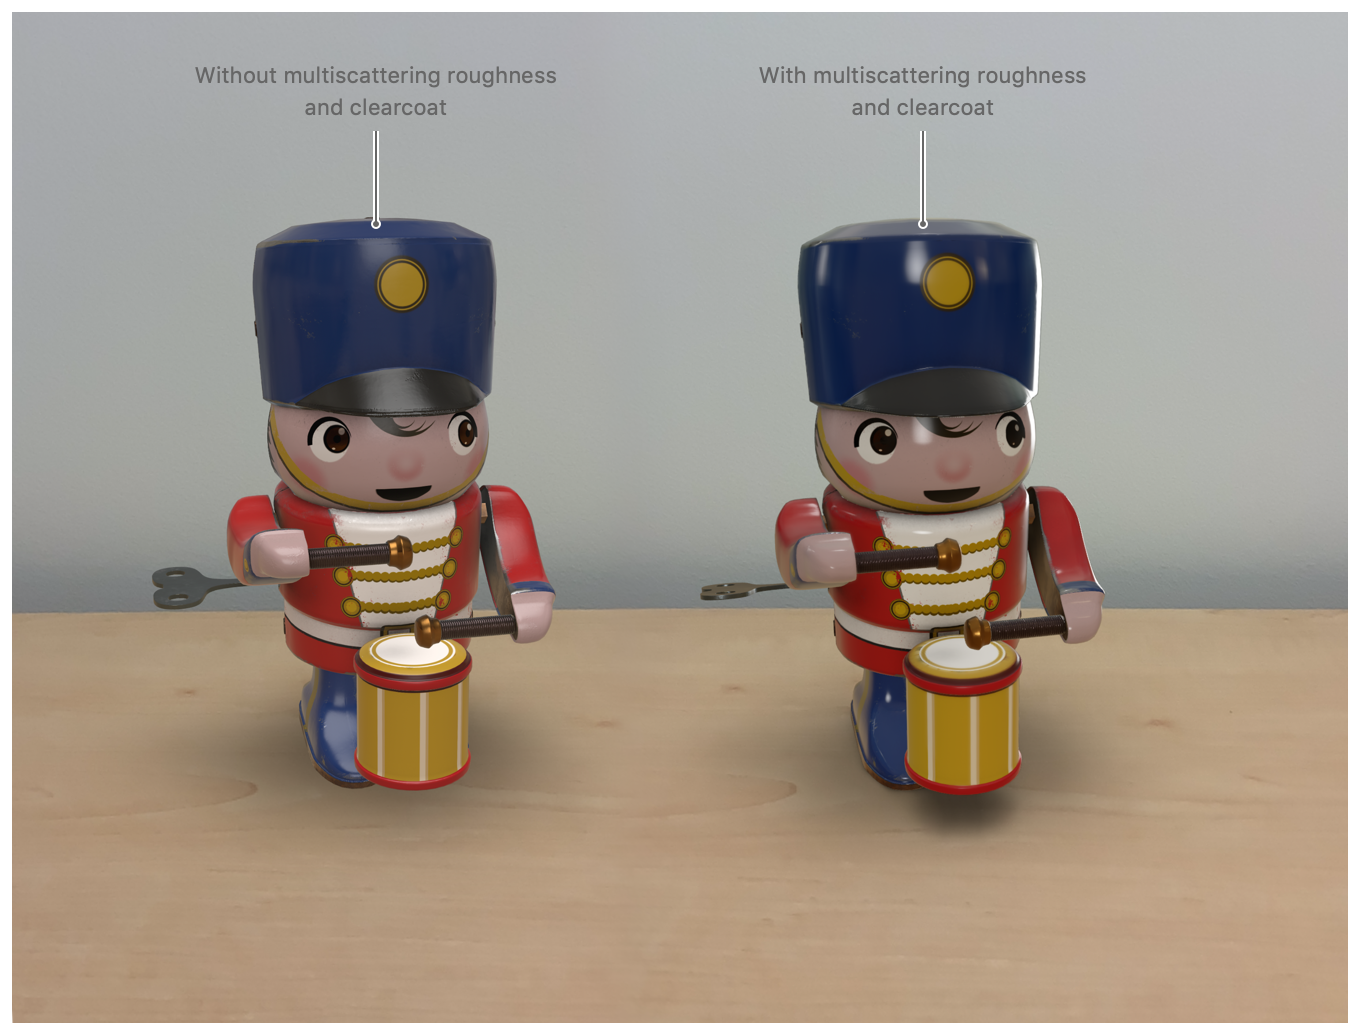 截屏显示了两个并排放置的木制玩具，用来展现添加模型功能的效果。左侧的玩具图像没有多重散射粗糙效果和透明涂层；右侧的玩具图像使用了多重散射粗糙效果和透明涂层。